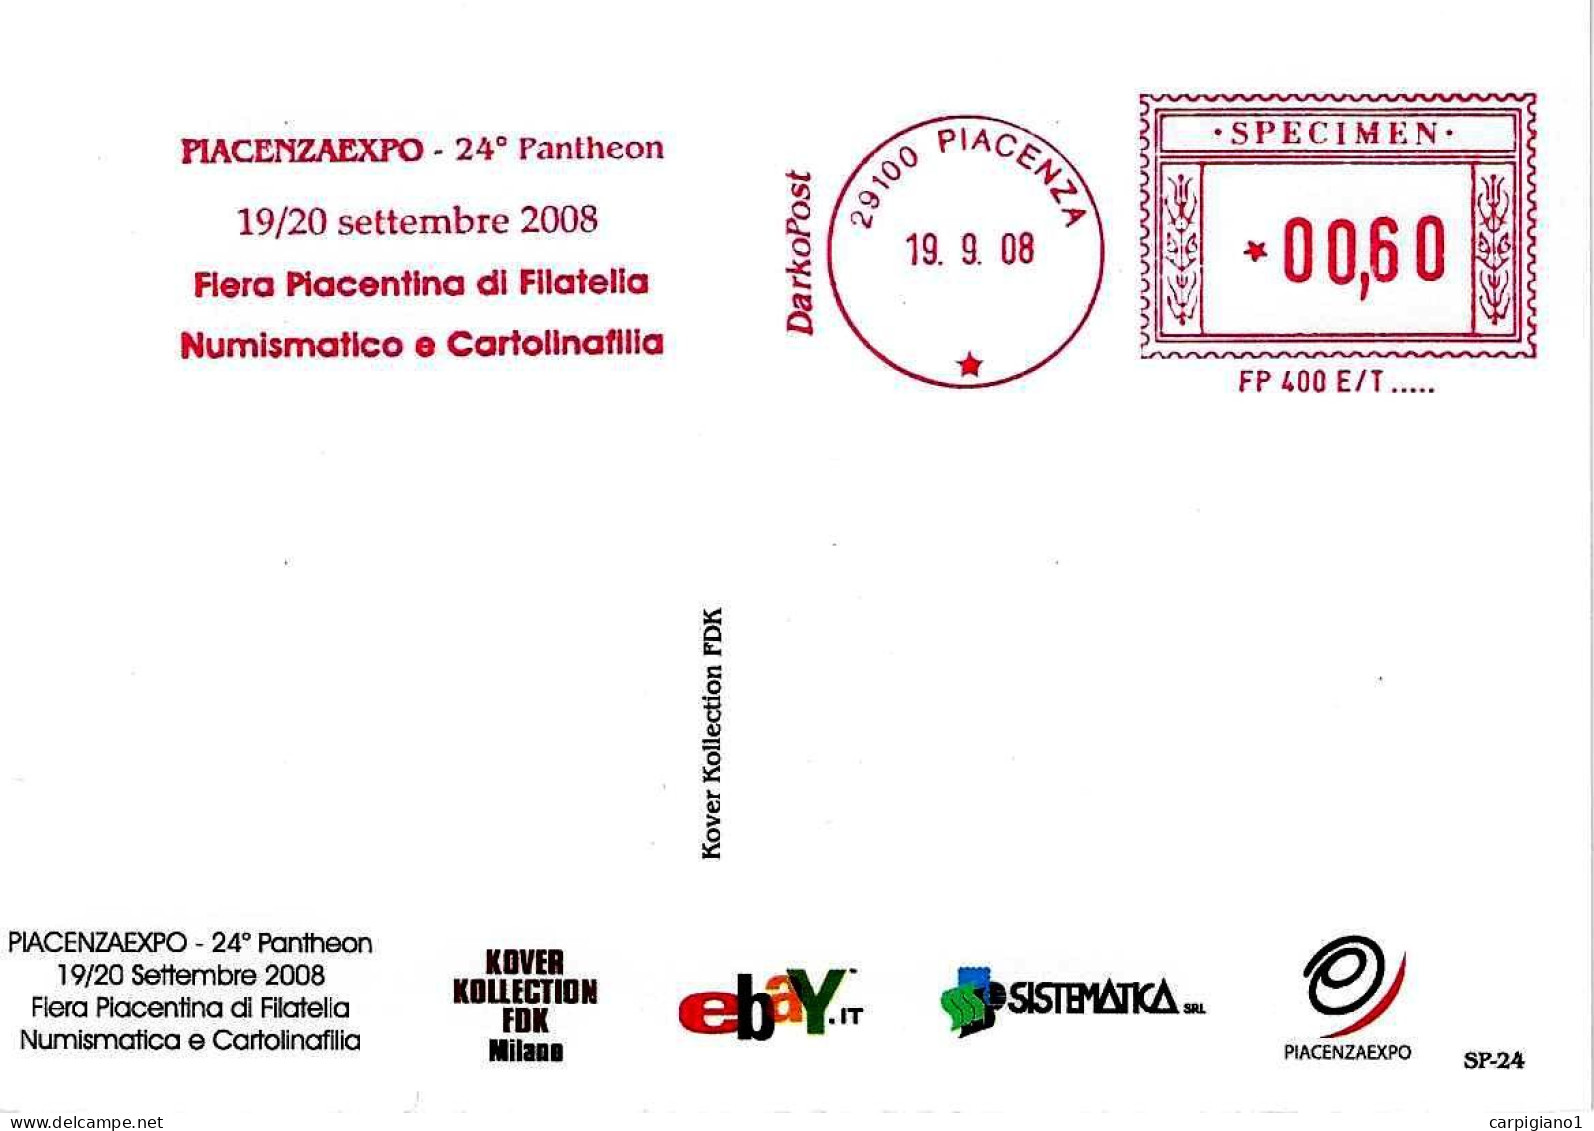 ITALIA - 2008 PIACENZA 24° Pantheon Piacenzaexpo Fiera Filatelia - Ema Affrancatura Mecc. Rossa Red Meter SPECIMEN - 653 - 2001-10: Poststempel